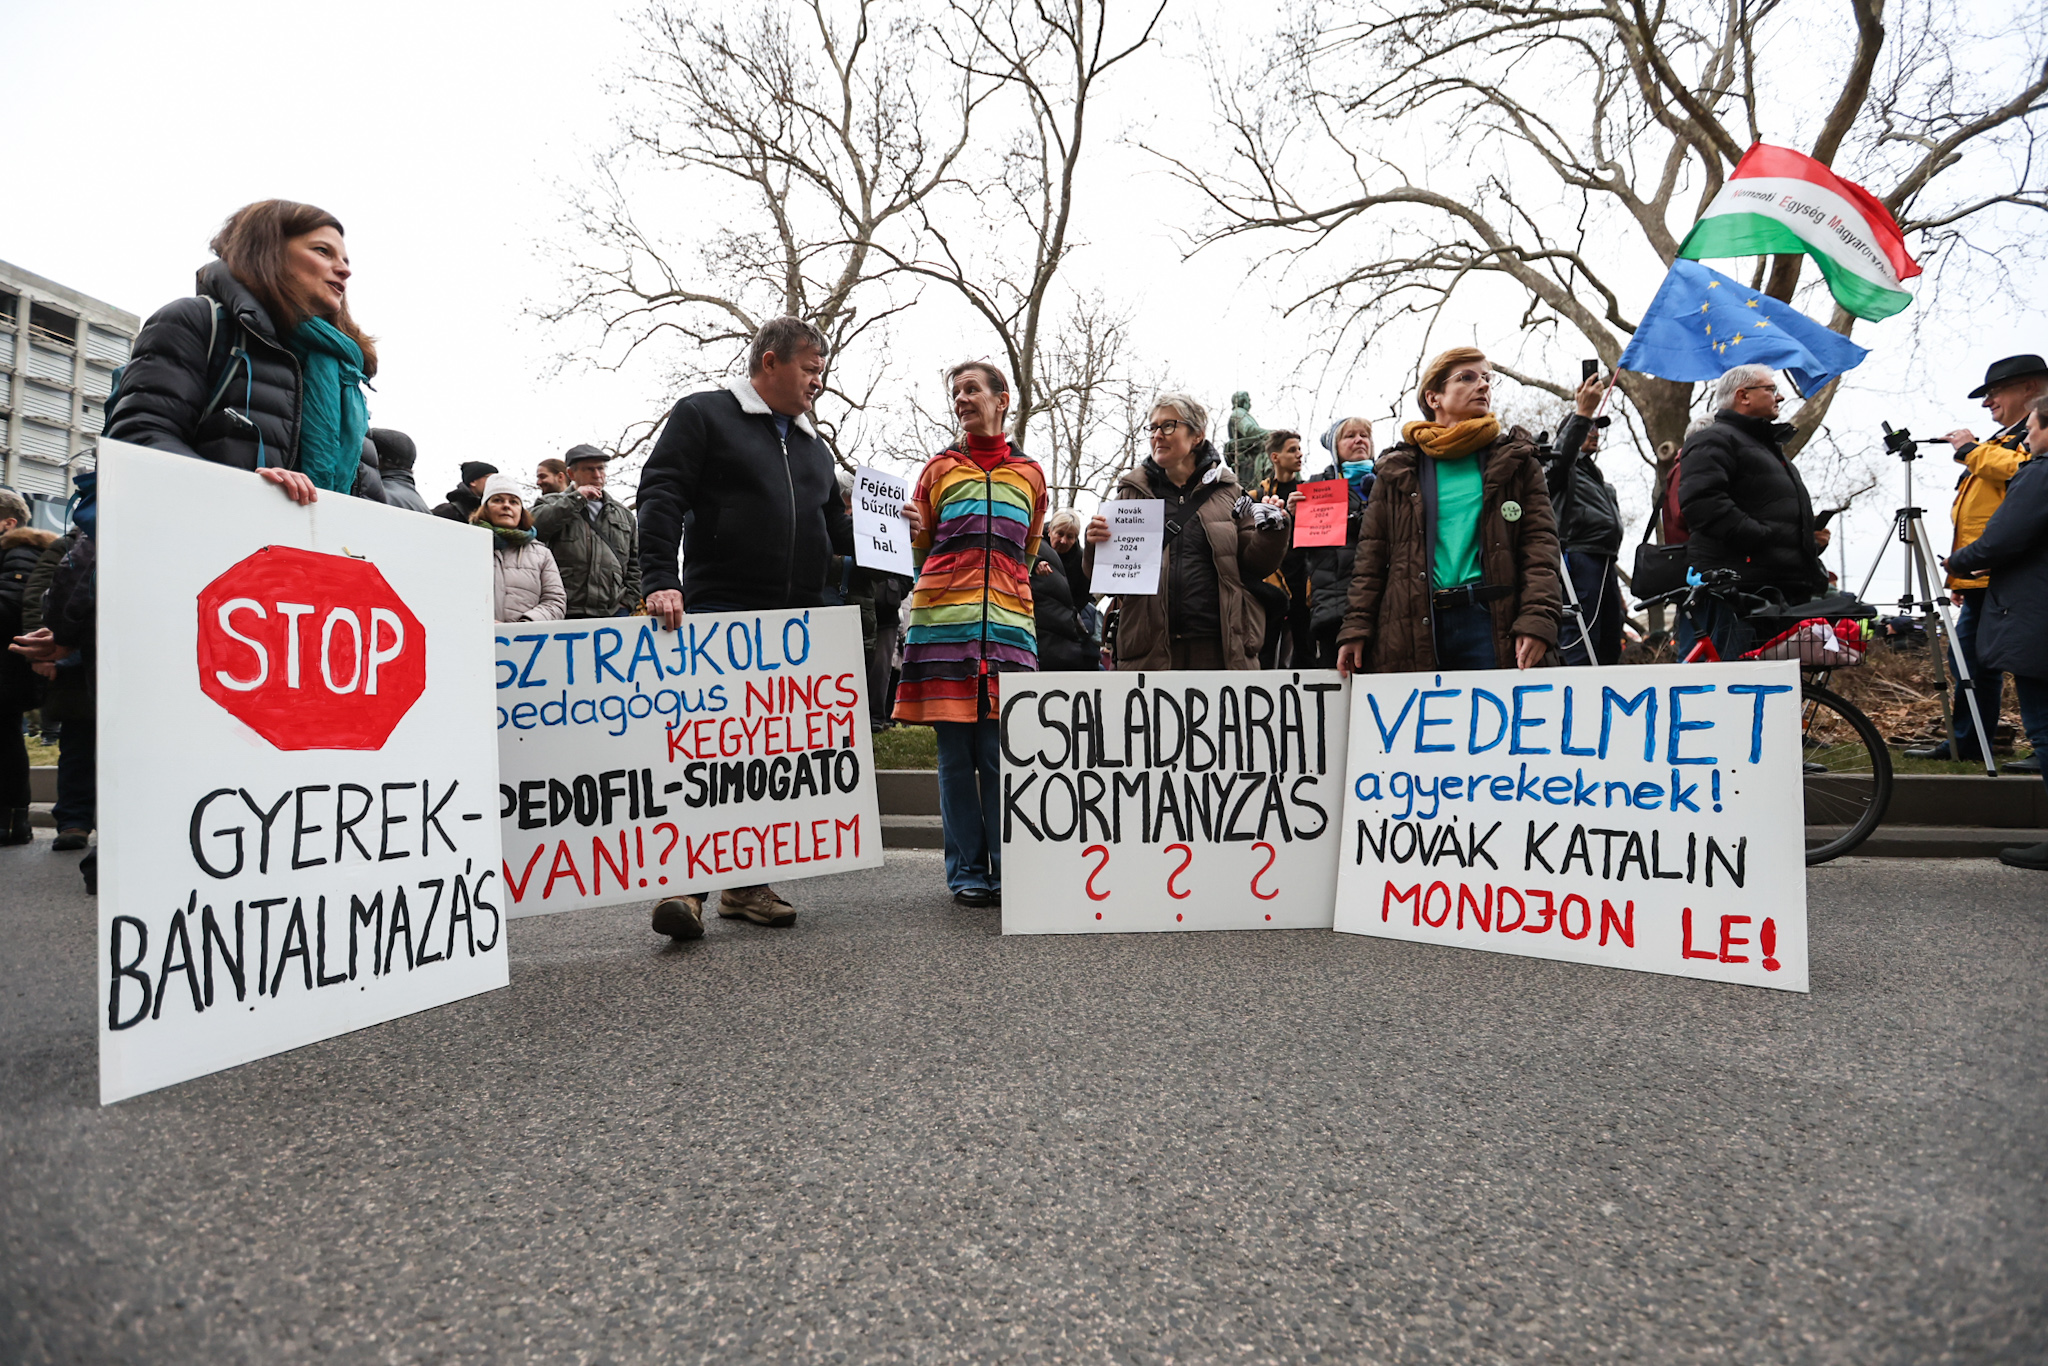 Fotók: Gyülekezik a tömeg – Tüntetés lesz este Novák Katalin kegyelmi ügye miatt a Sándor-palotánál